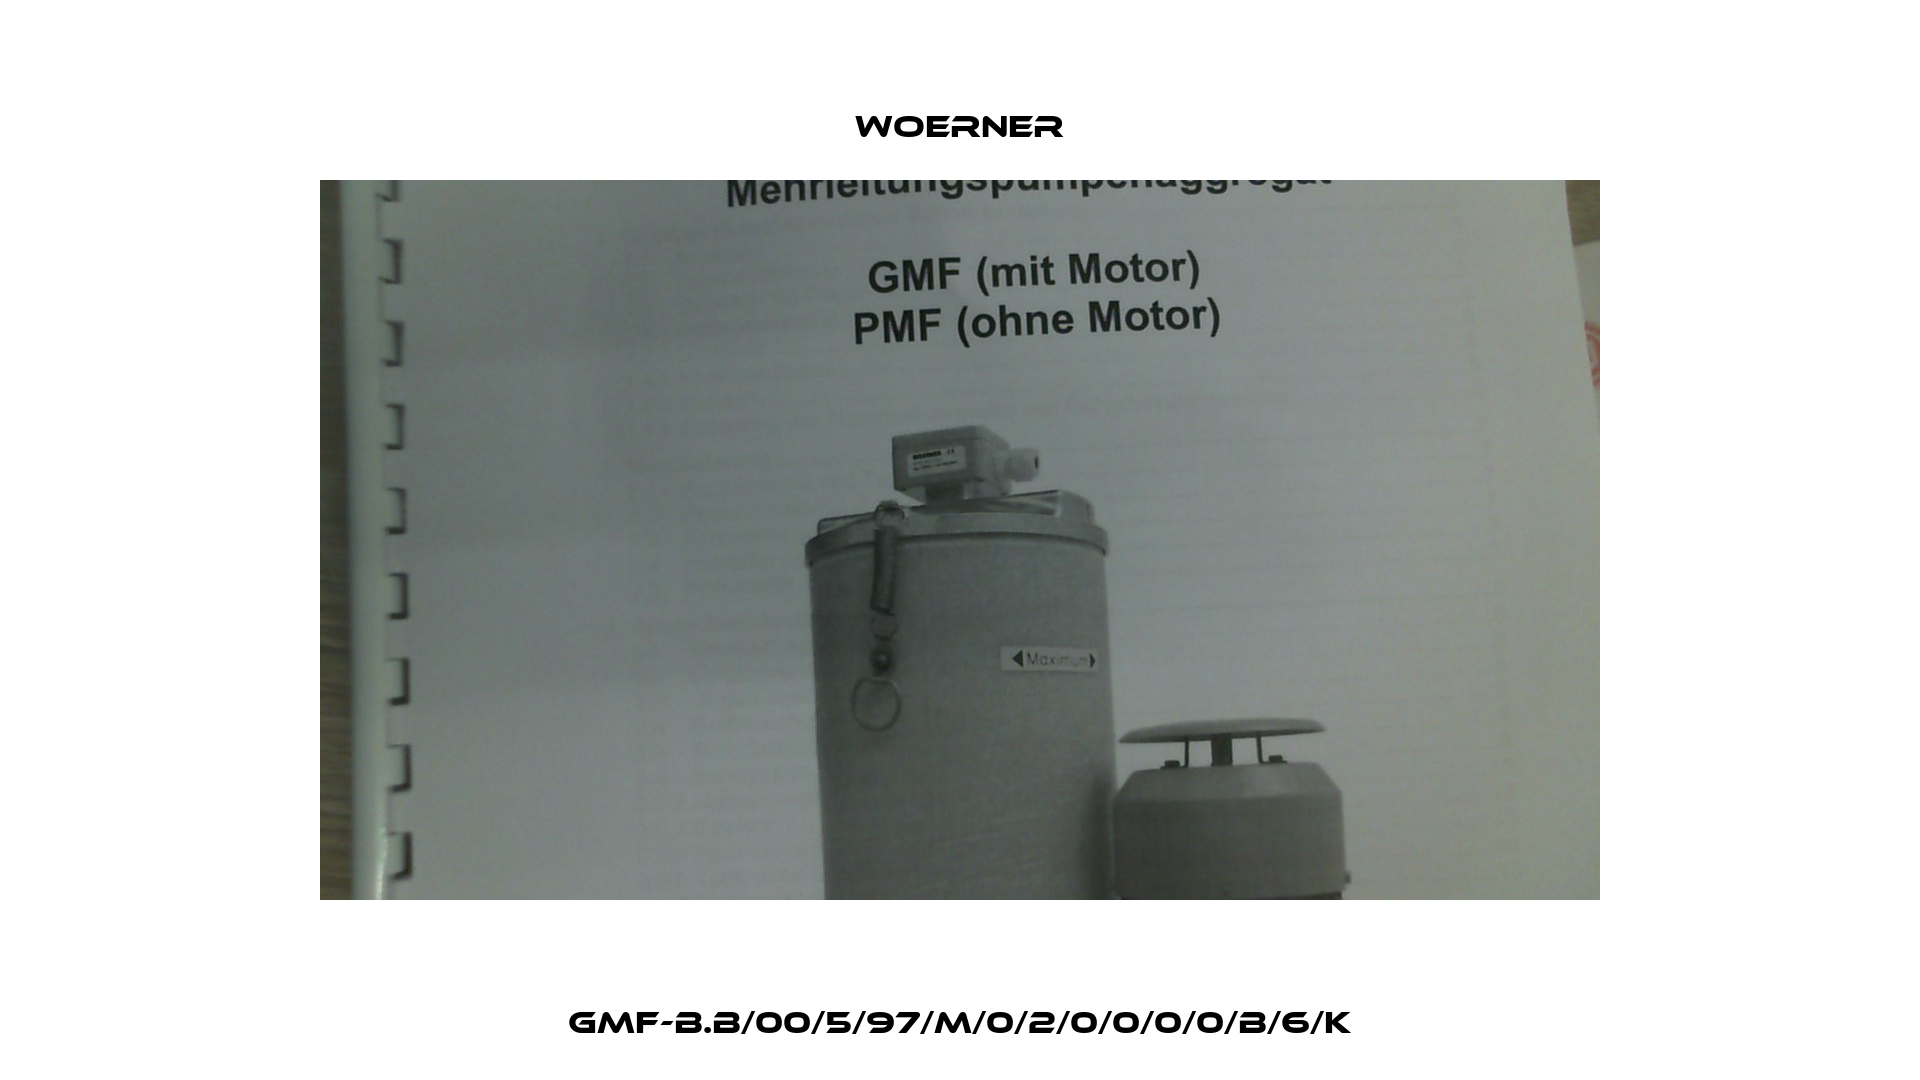 GMF-B.B/00/5/97/M/0/2/0/0/0/0/B/6/K Woerner